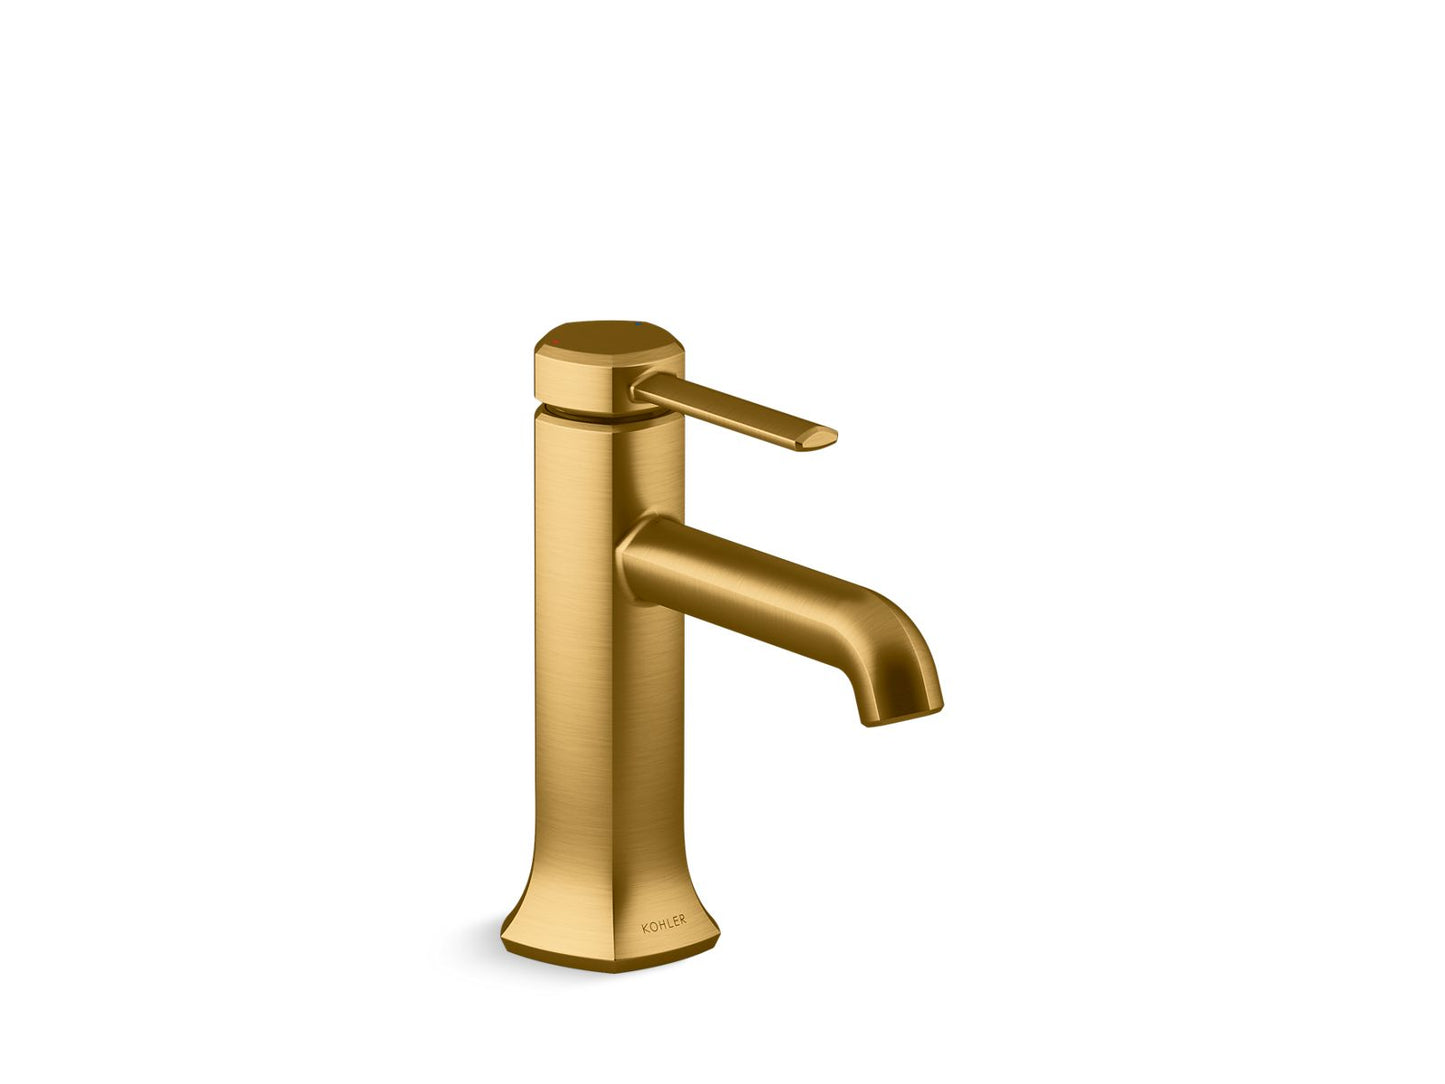 KOHLER K-27000-4-2MB Occasion Single-Handle Bathroom Sink Faucet, 1.2 Gpm In Vibrant Brushed Moderne Brass